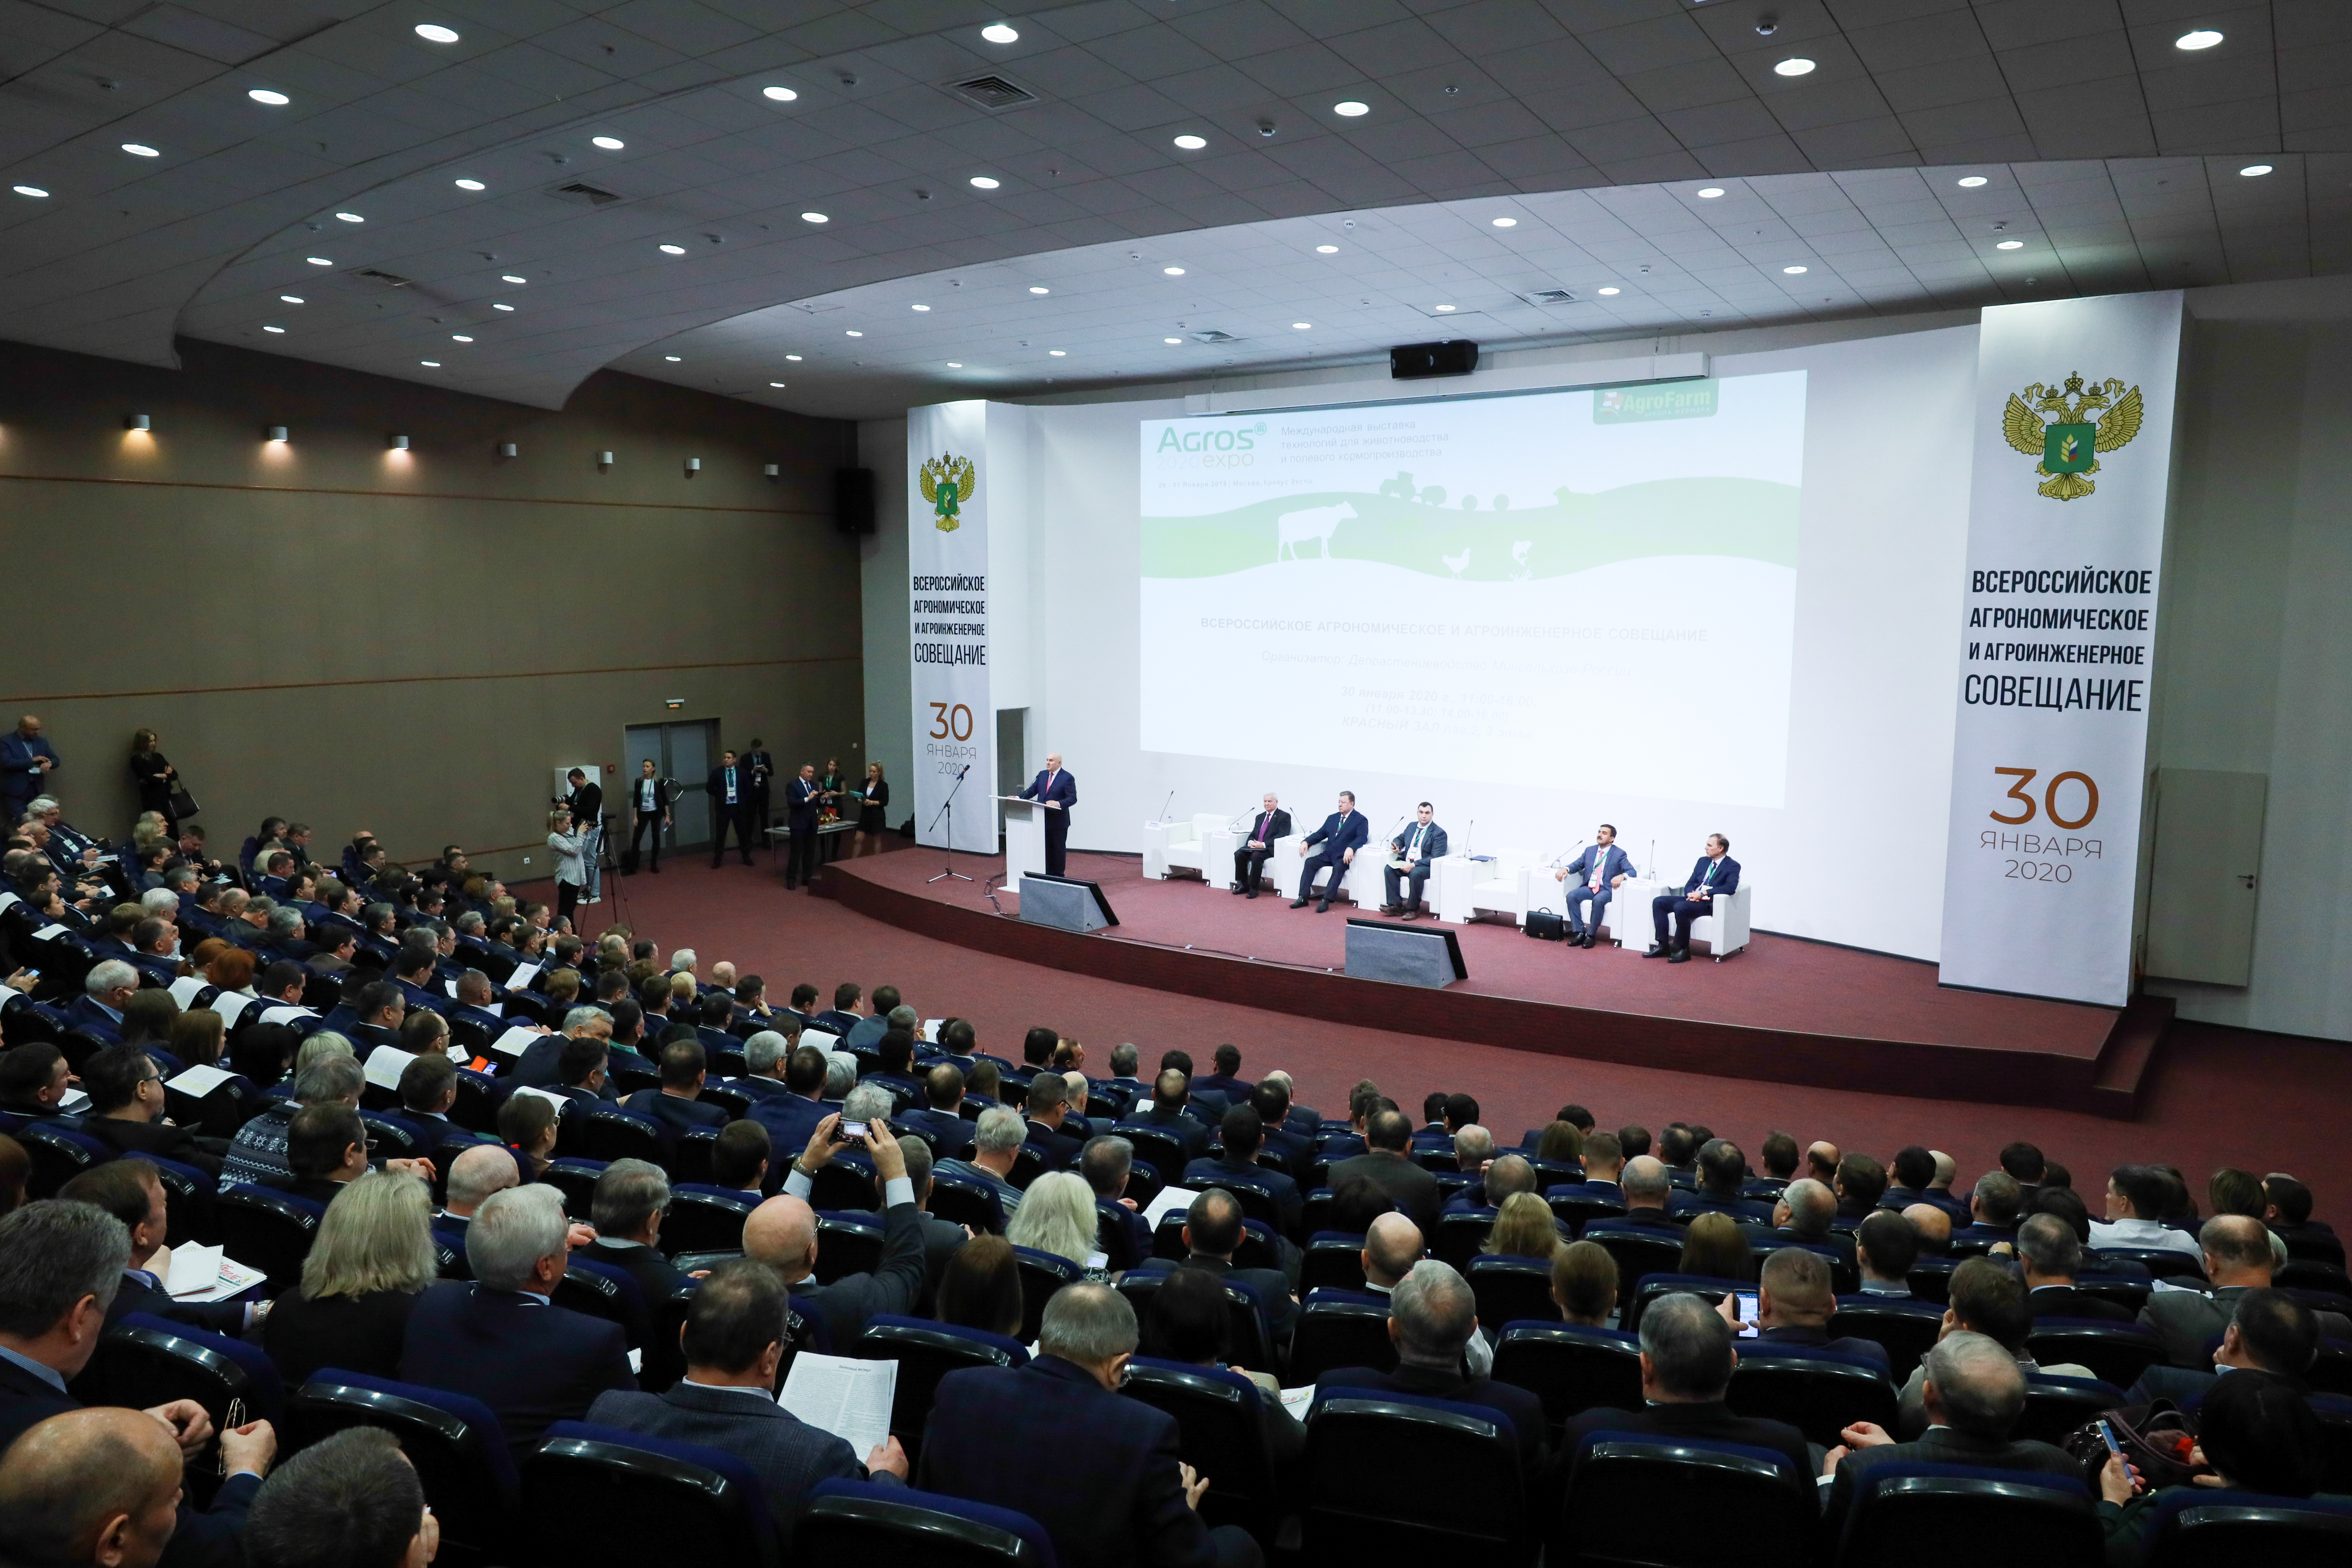 Джамбулат Хатуов провёл Всероссийское агрономическое и агроинженерное совещание